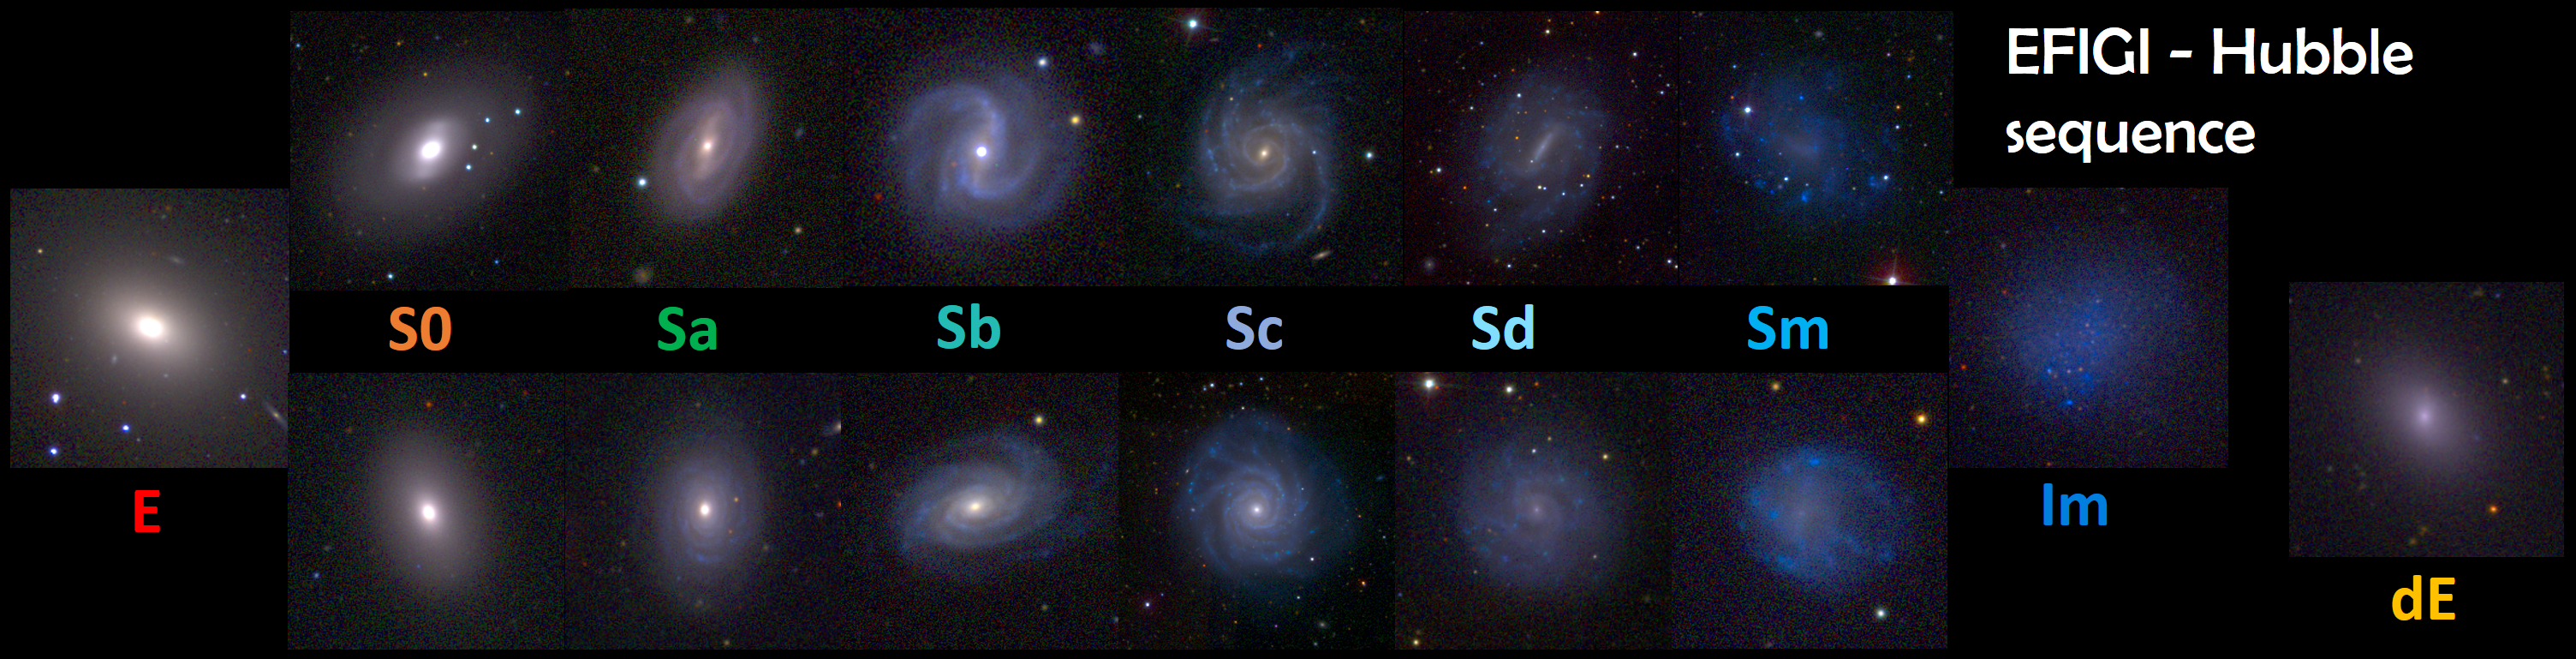 Figure 1: The Hubble-de Vaucouleurs morphological sequence illustrated by the EFIGI galaxies